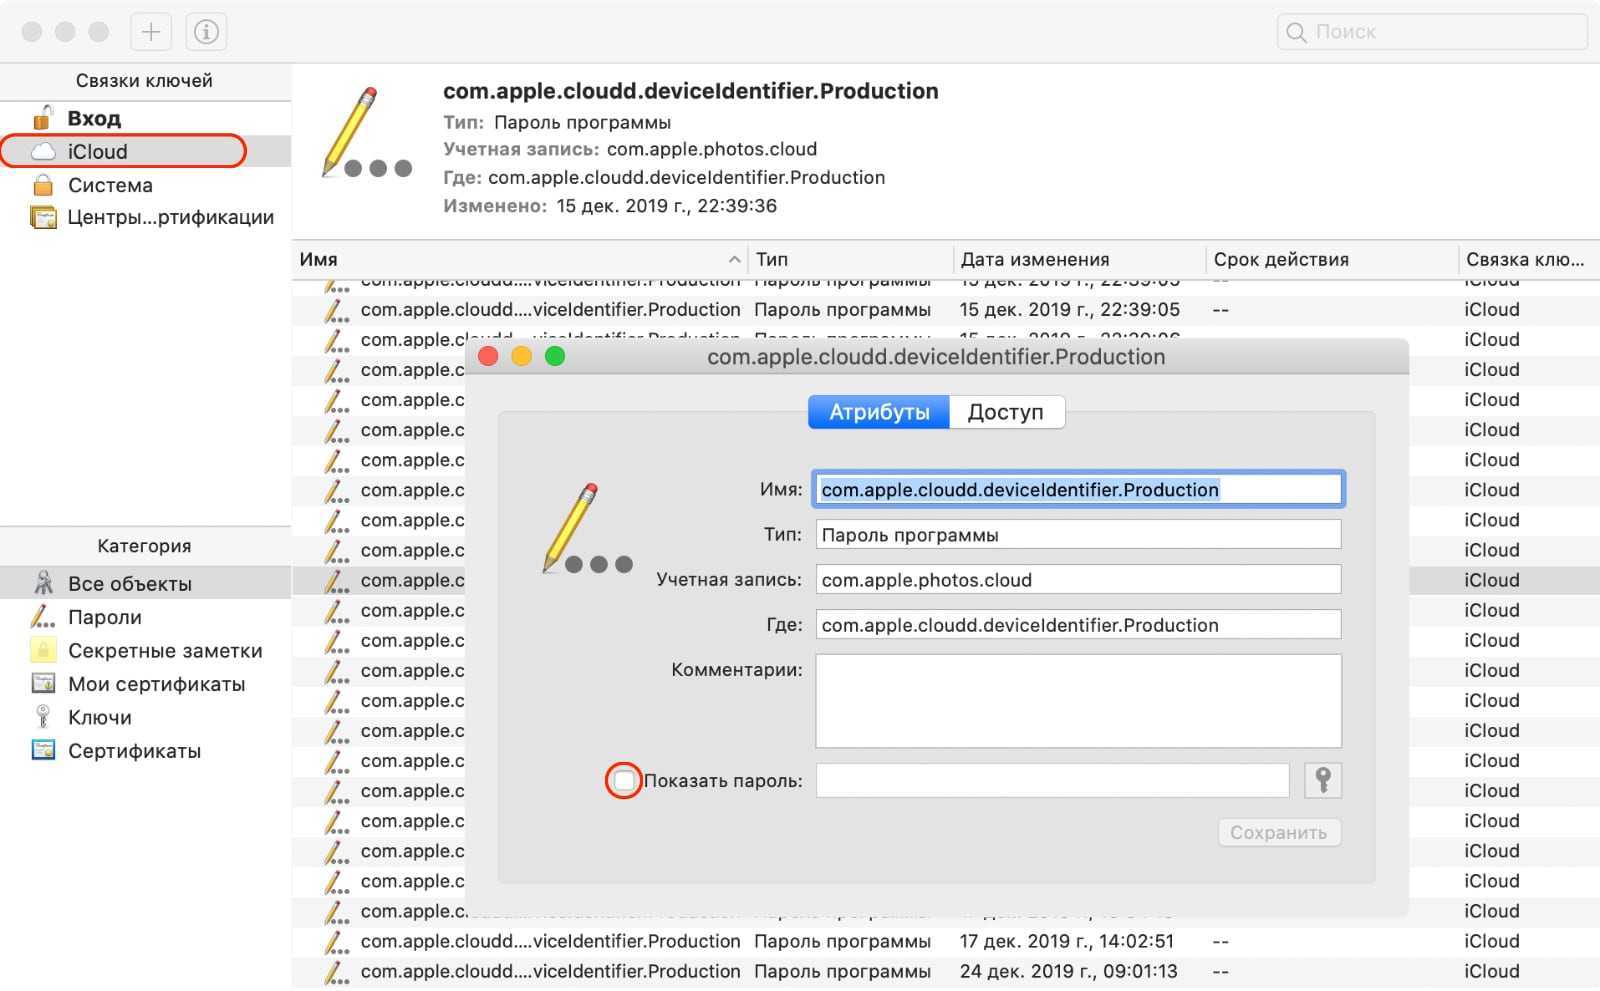 Как использовать пароли Safari в других приложениях на Mac Как посмотреть сохраненный пароль в браузере Safari на macOS Как работает Менеджер паролей в macOS